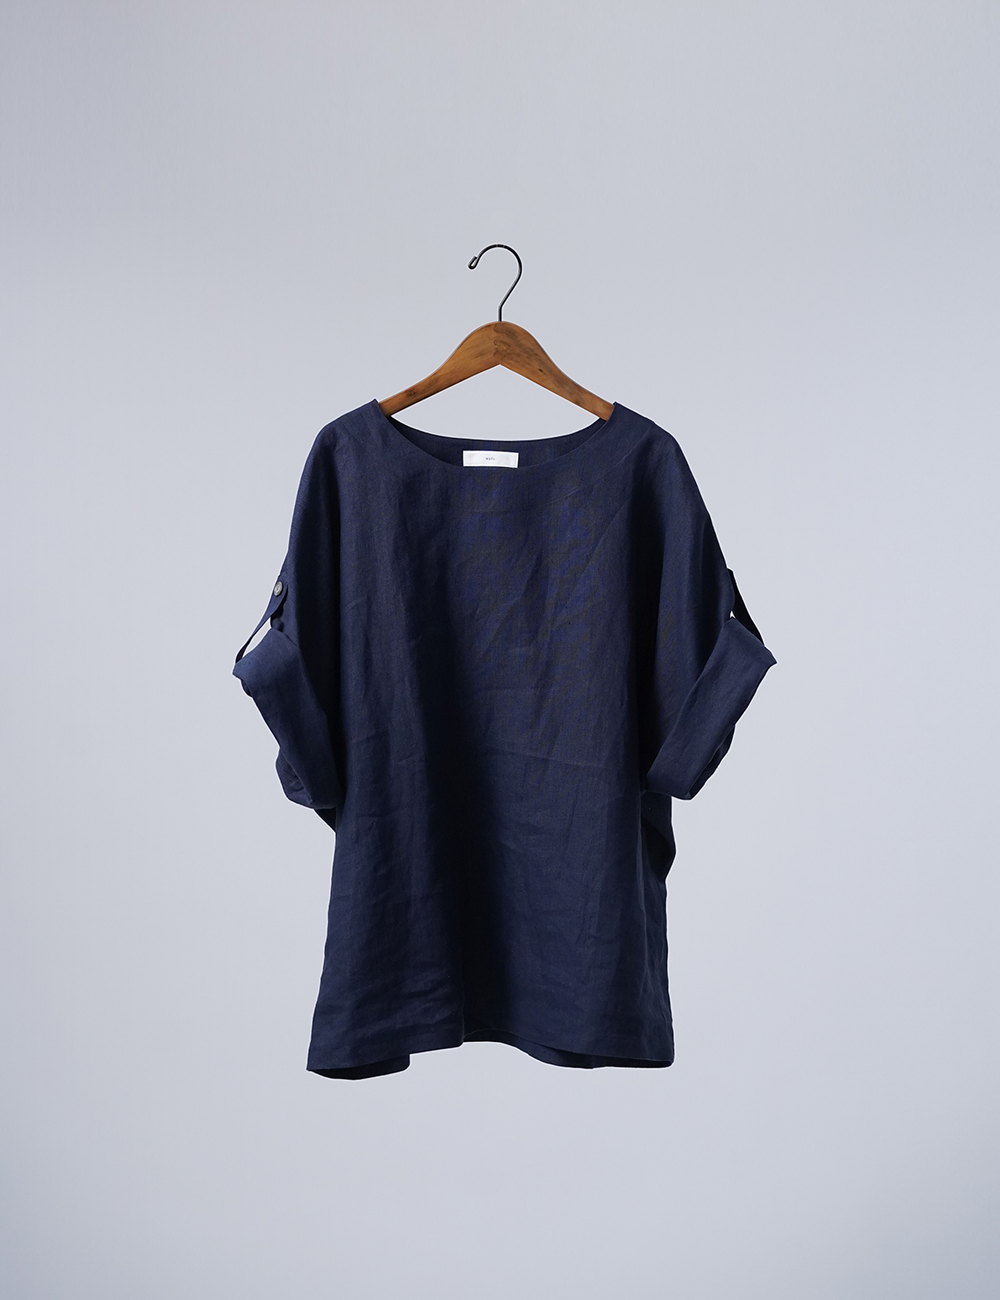 【リネントップス】風が通る ロールアップTシャツ/留紺(とめこん) t041k-tmk1